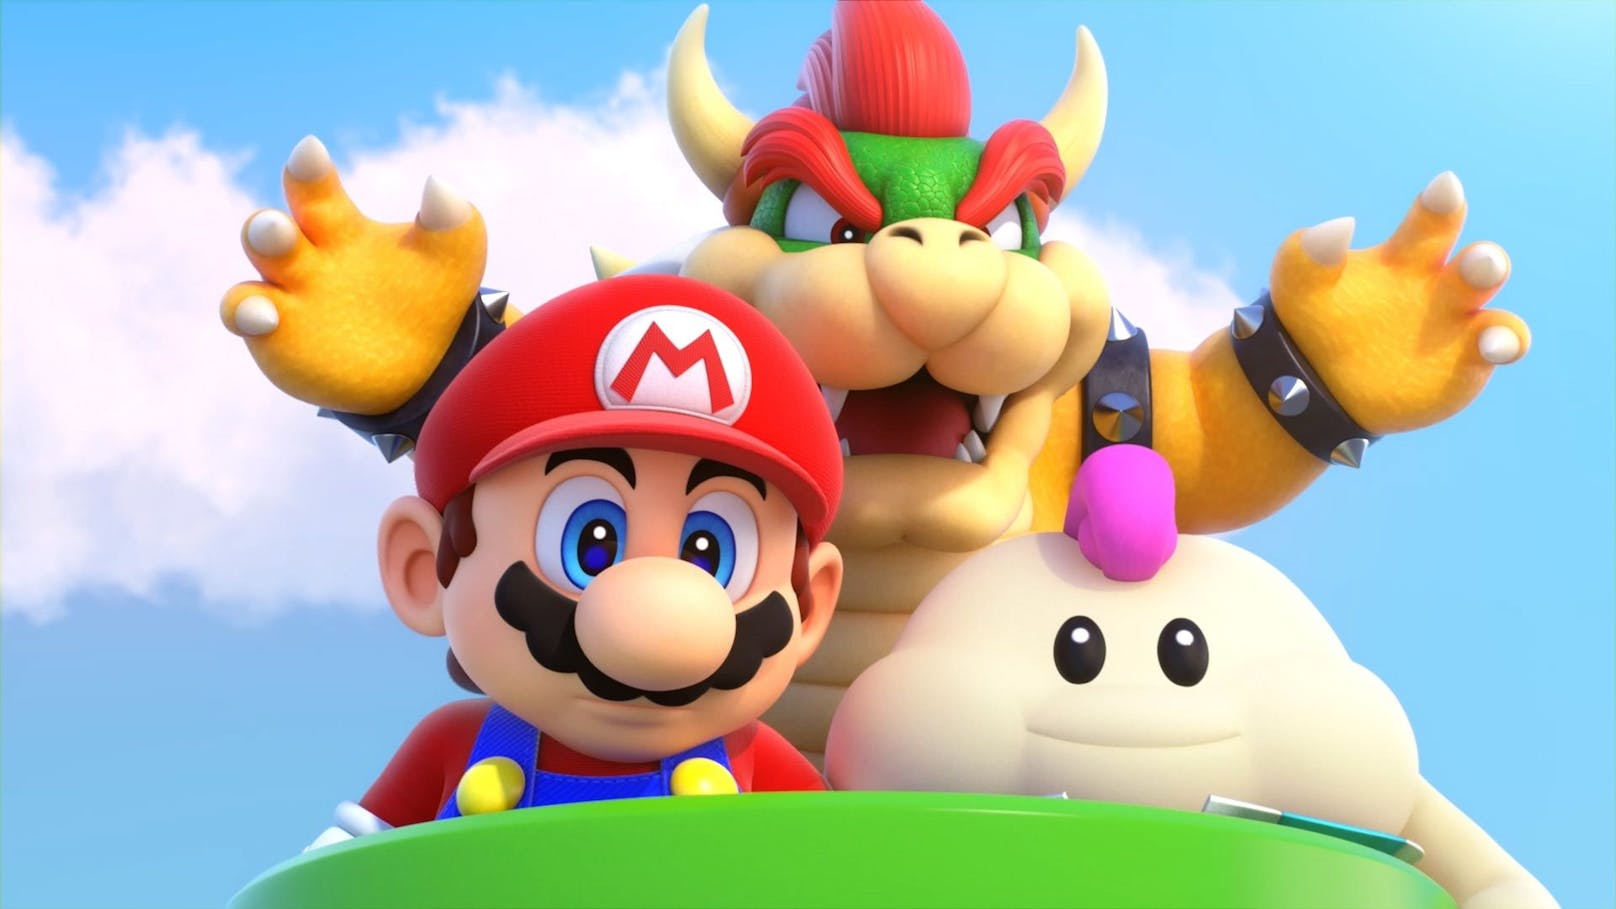 Super Mario macht jetzt gemeinsame Sache mit Bowser